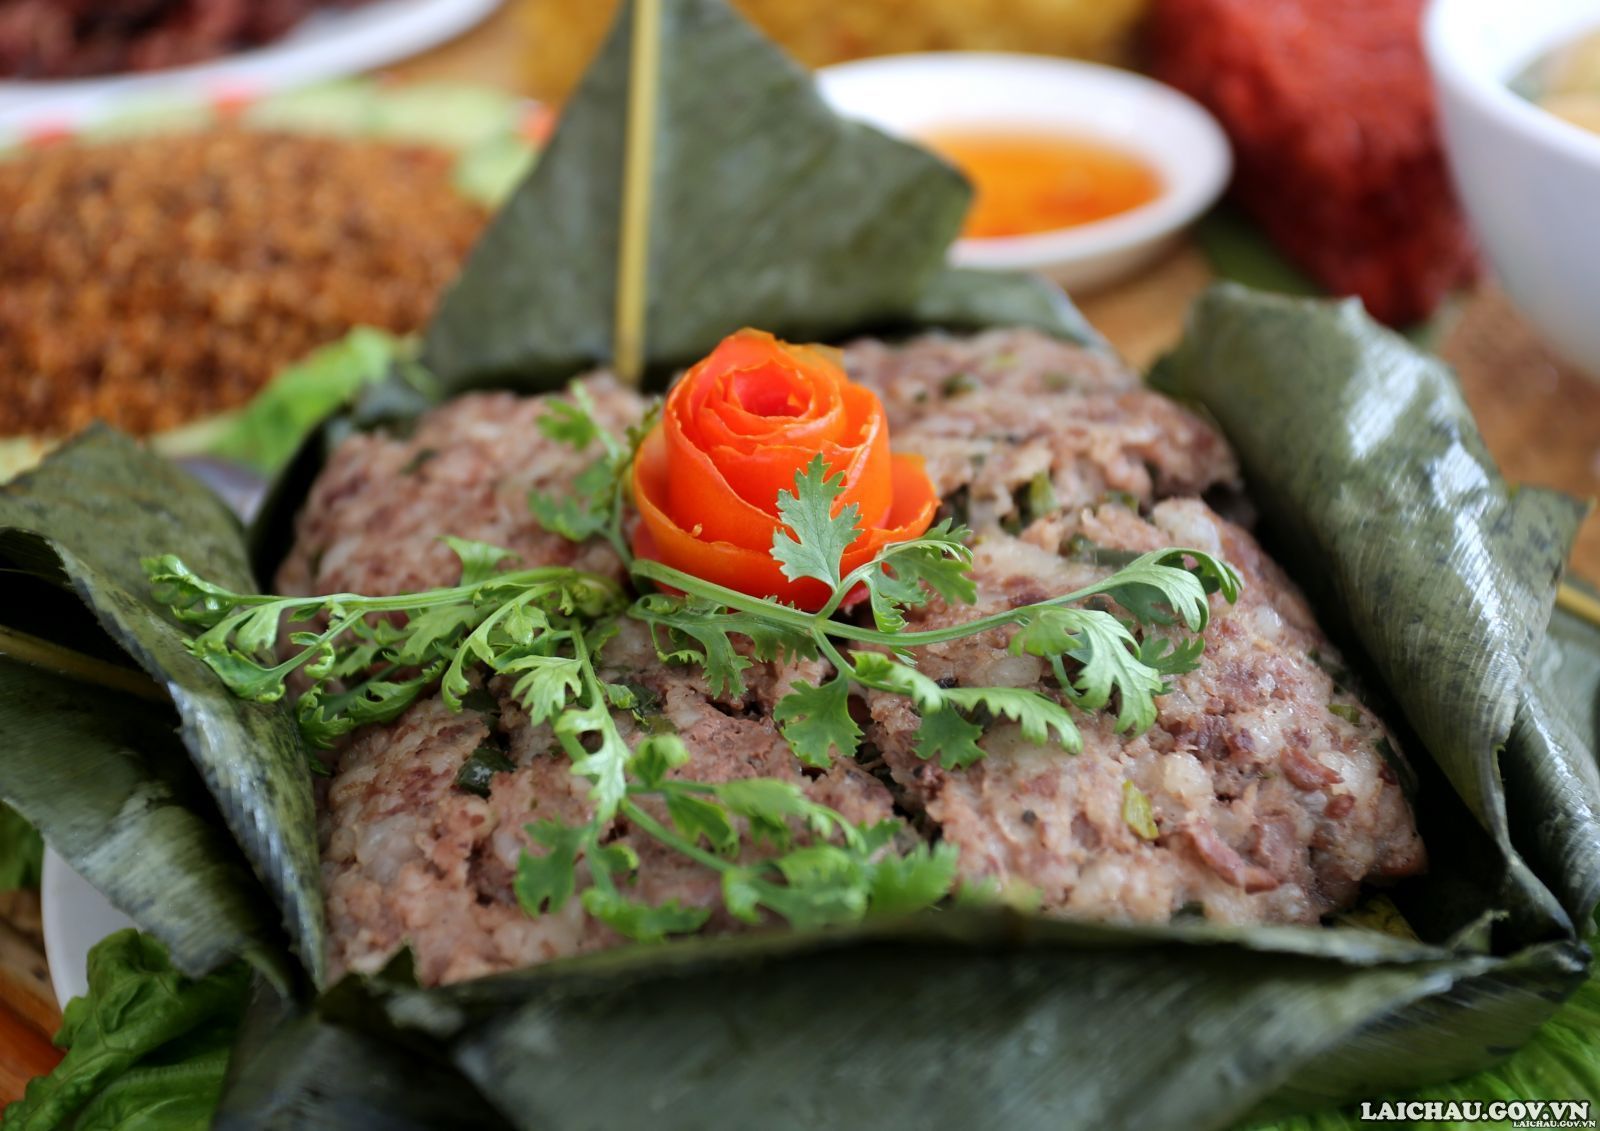 Thịt lợn băm gói lá nướng của người Thái rất đơn giản. Nguyên liệu chỉ là phần thịt vai có cả nạc và mỡ, kết hợp với các gia vị đặc trưng, rau thơm. Khi được nướng trên than hồng thơm phức thì ăn một lần là ấn tượng.